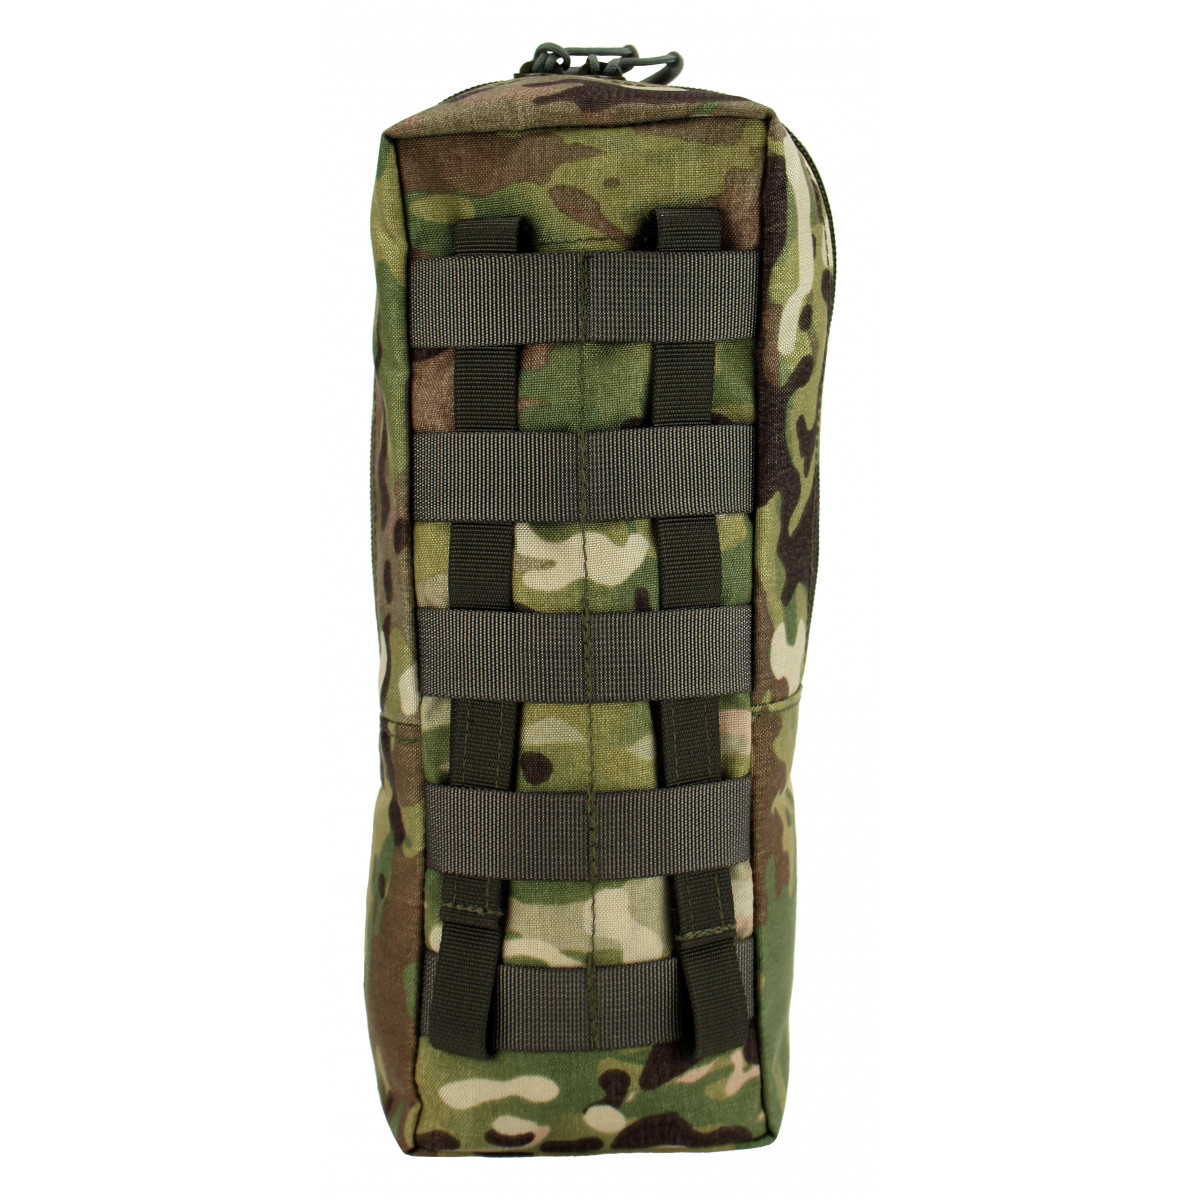 Universal Backpack Side-Bag